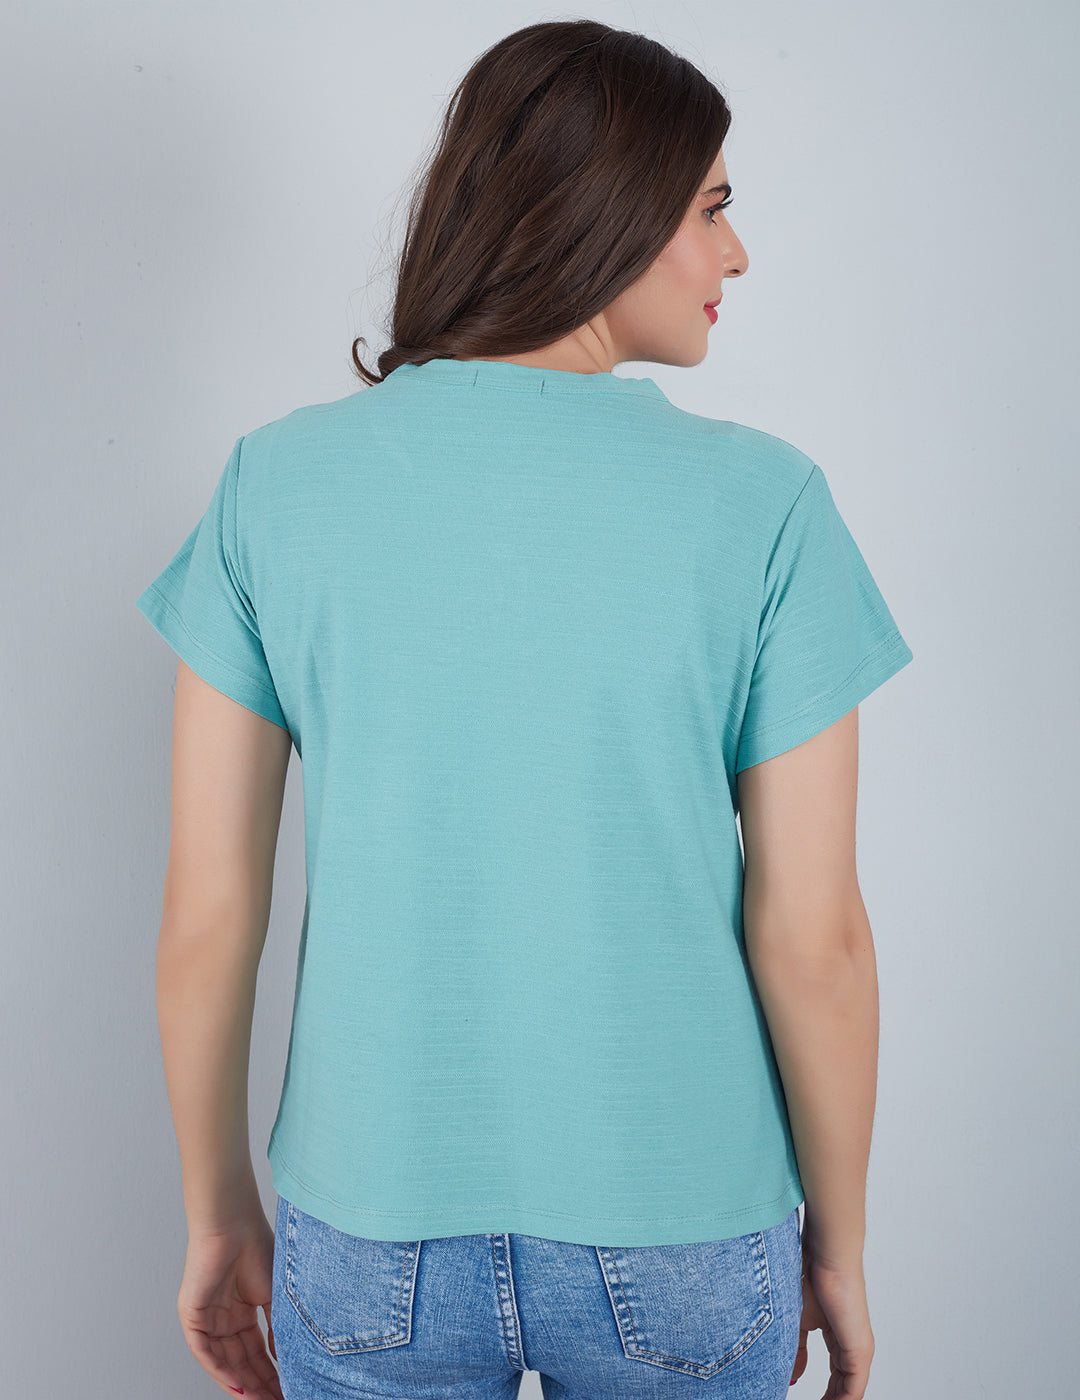 Regular Short Sleeve Plain Shirt - Sage